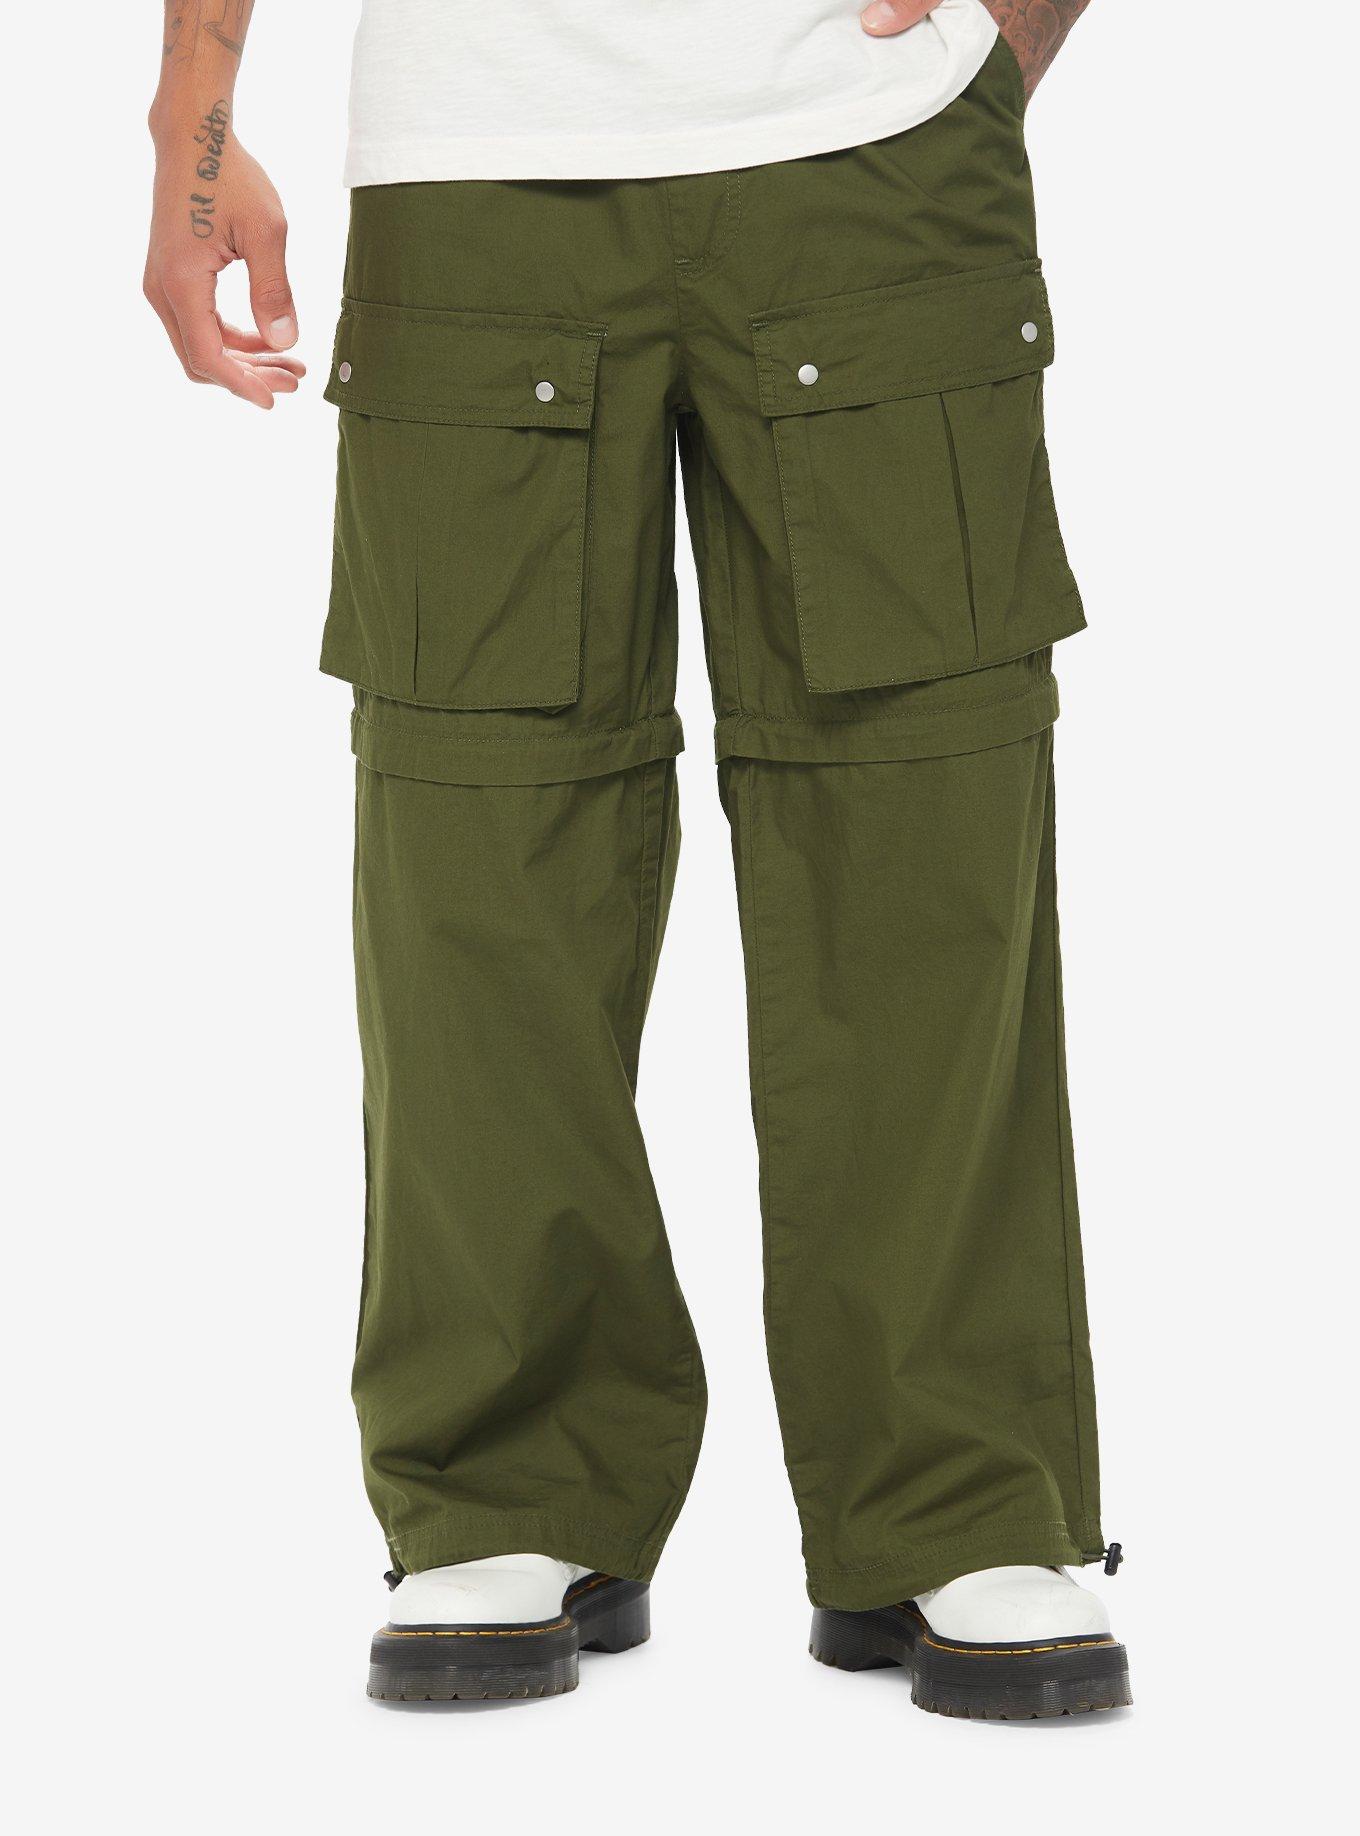 Green Cargo Zip-Off Pants, GREEN, hi-res